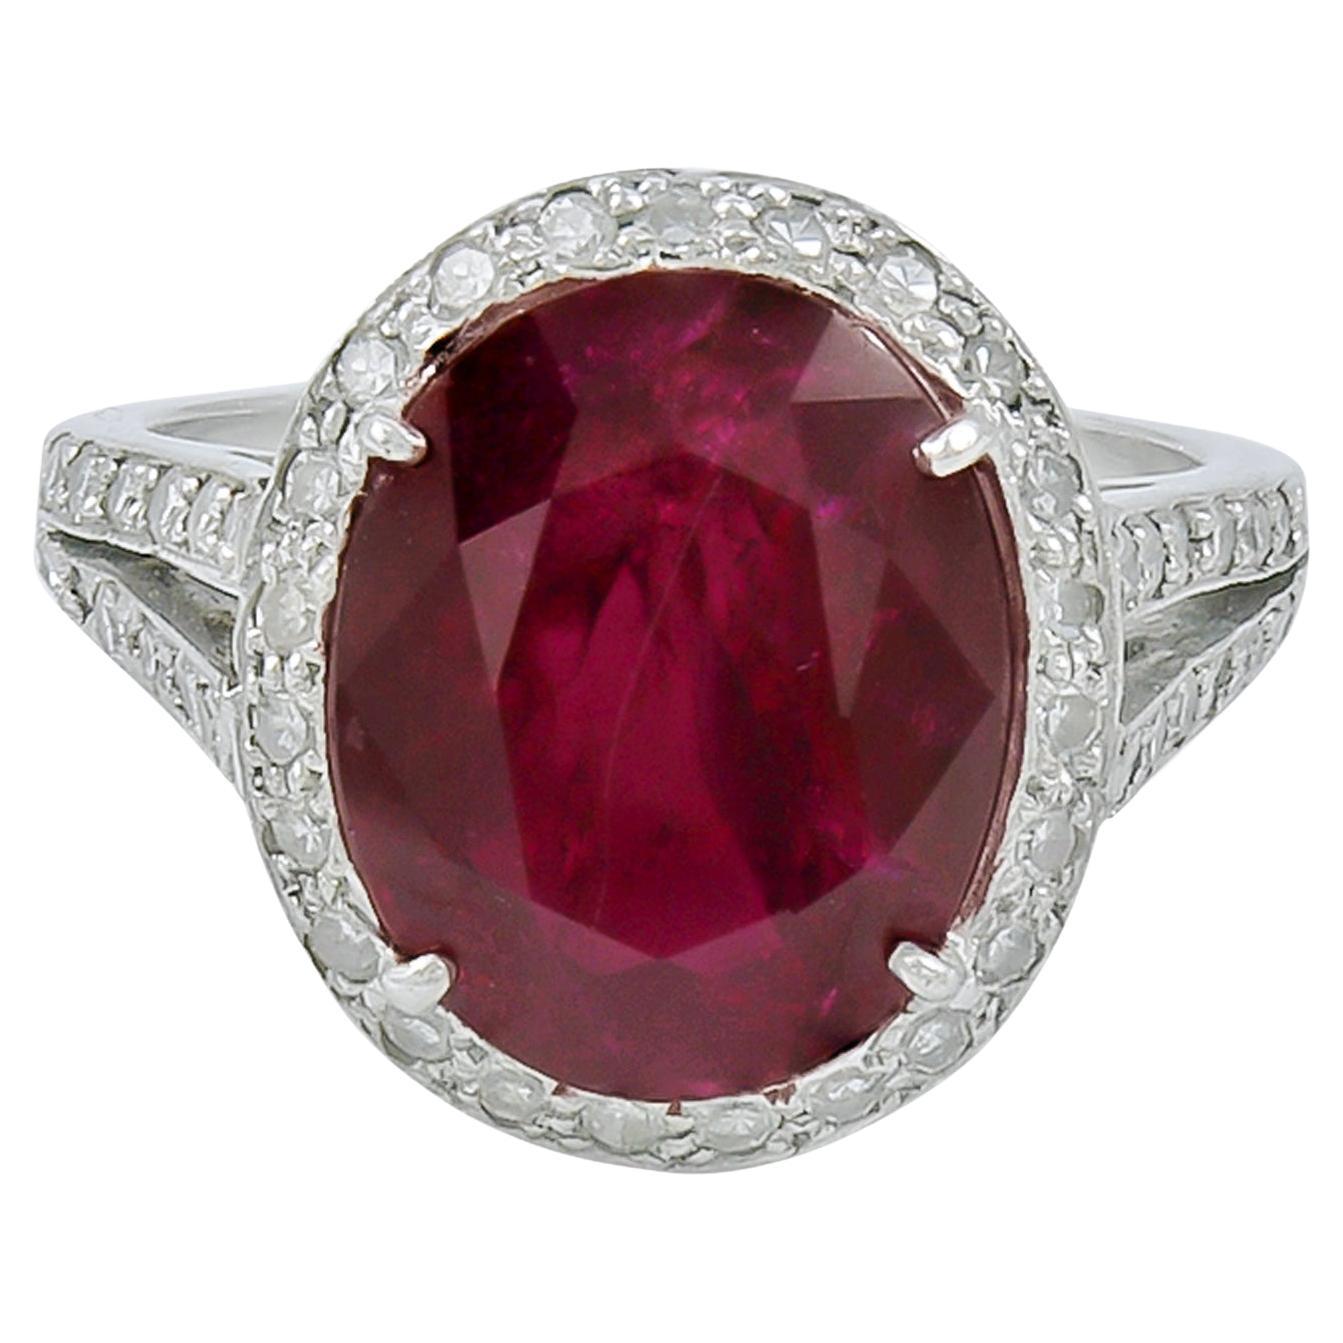 Spectra Fine Jewelry Bague diamant rubis non chauffé certifié 6,16 carats